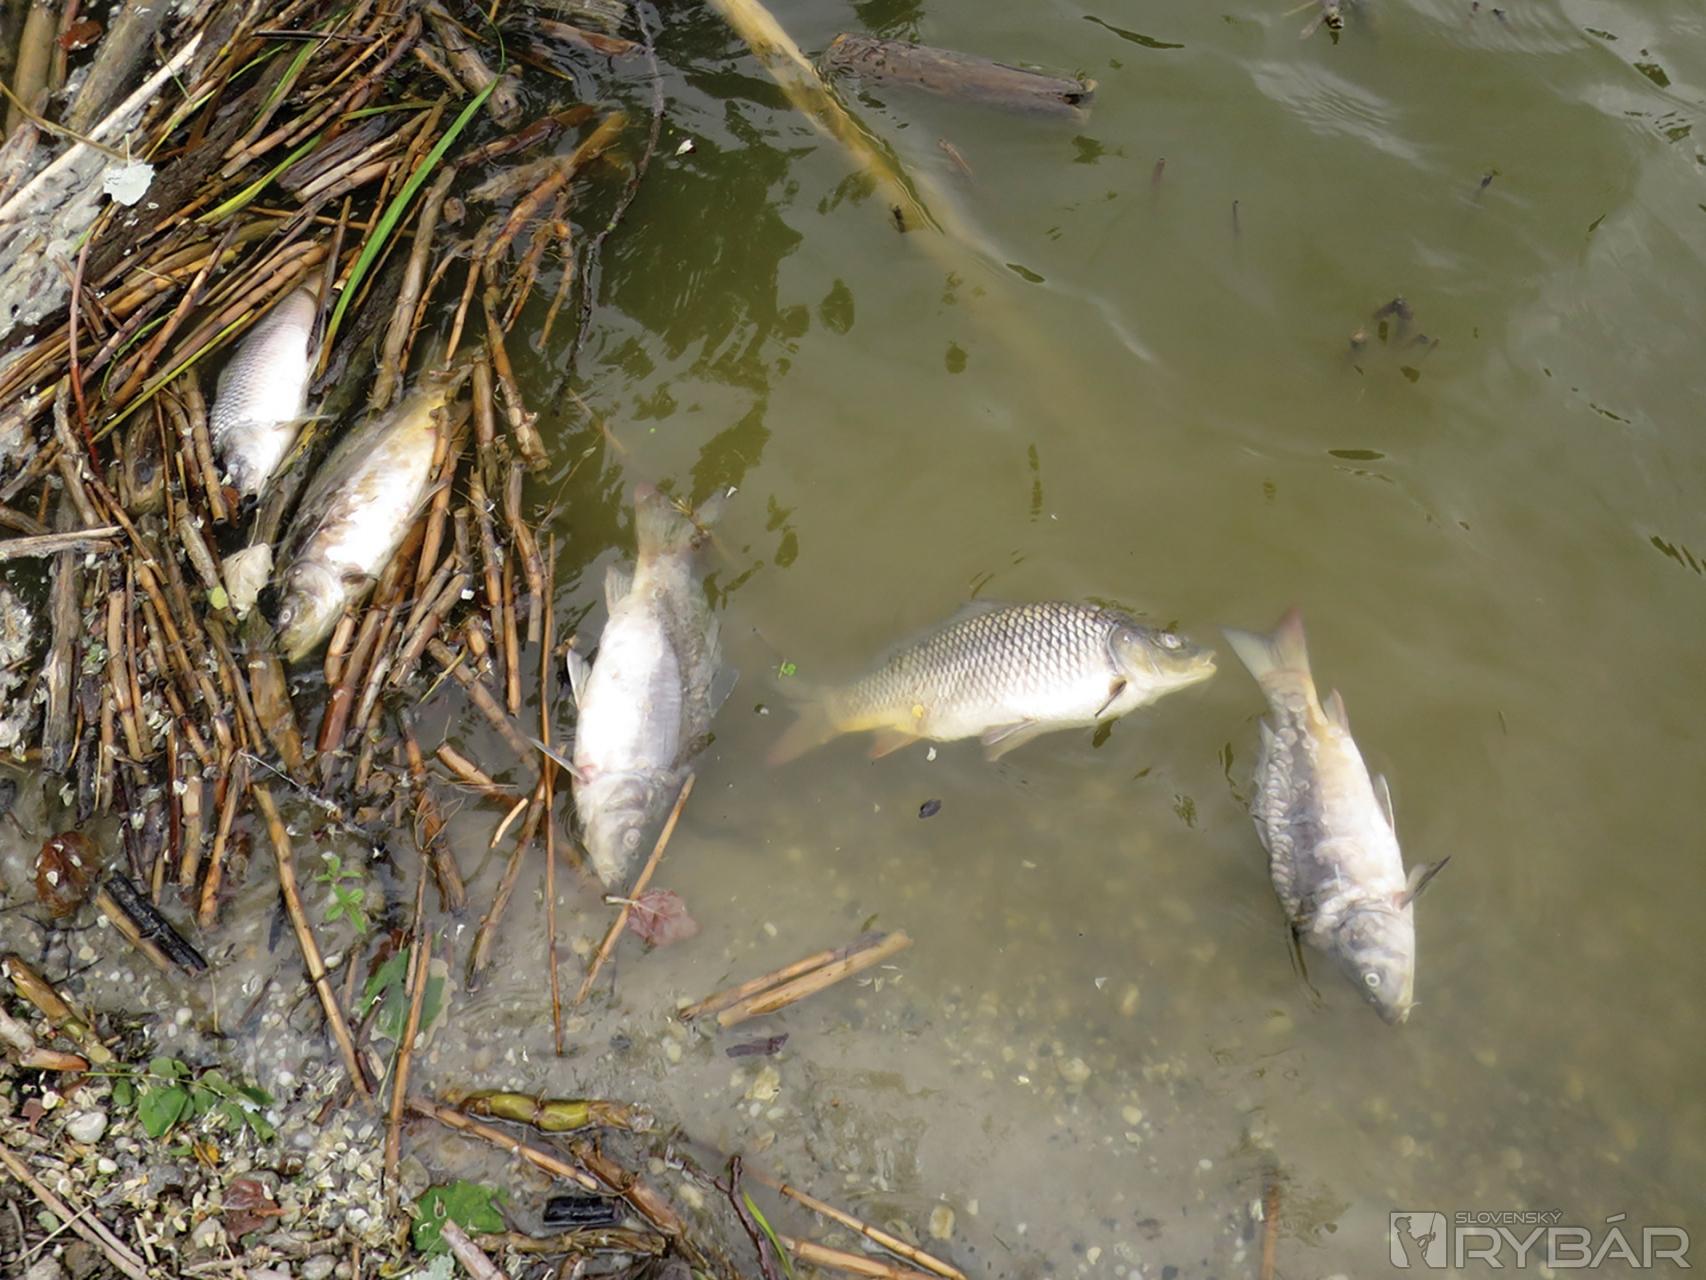 Popri brehoch niektorých štrkovísk rybári nachádzali množstvo uhynutých rýb.